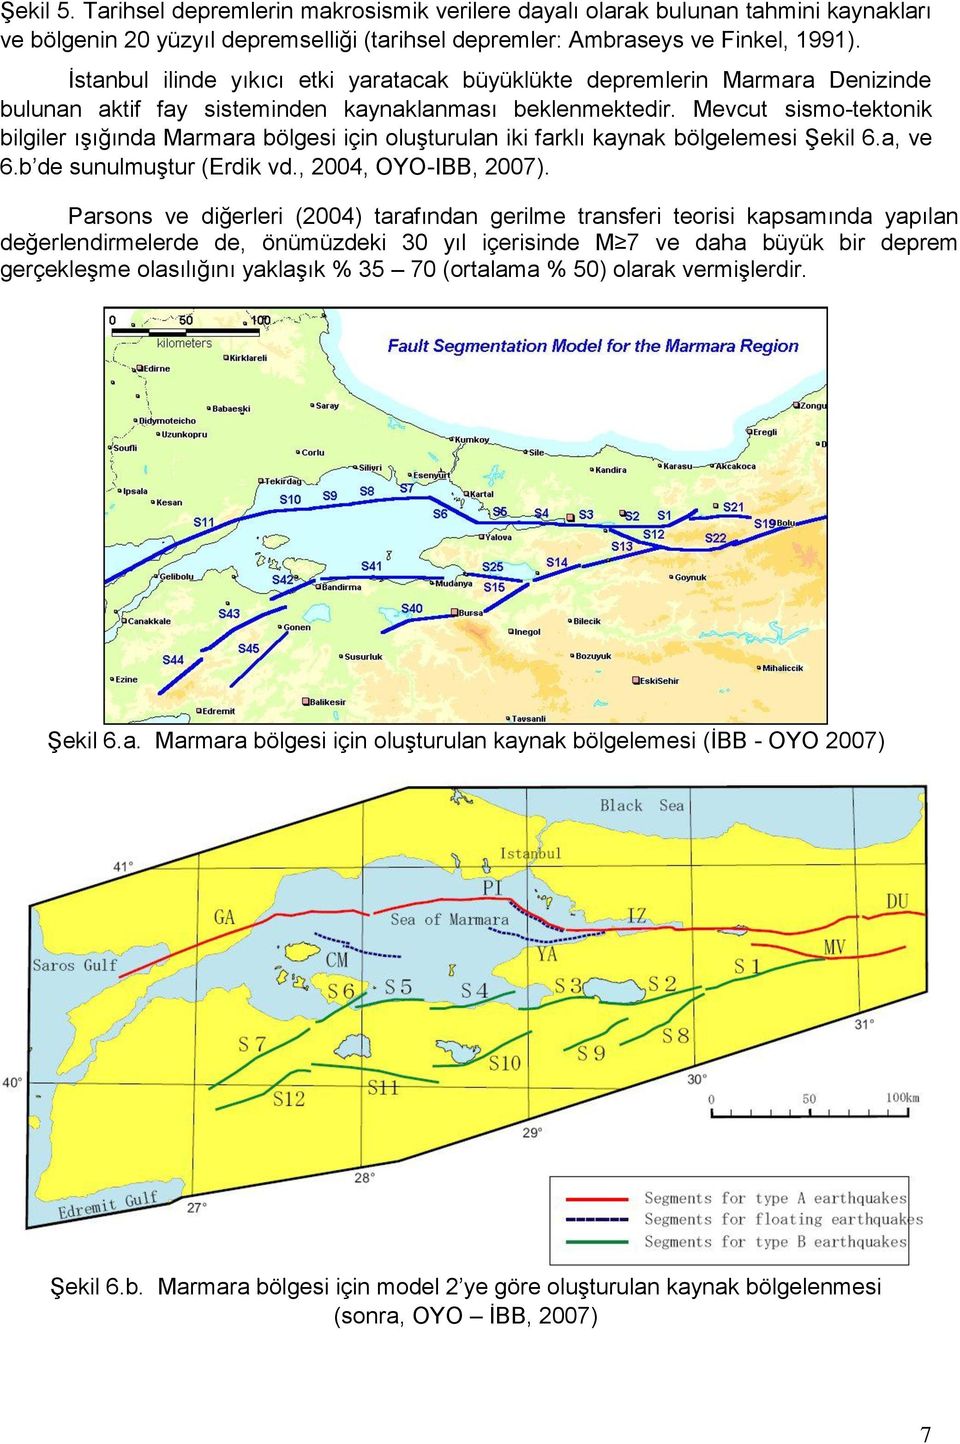 Mevcut sismo-tektonik bilgiler ışığında Marmara bölgesi için oluşturulan iki farklı kaynak bölgelemesi Şekil 6.a, ve 6.b de sunulmuştur (Erdik vd., 2004, OYO-IBB, 2007).